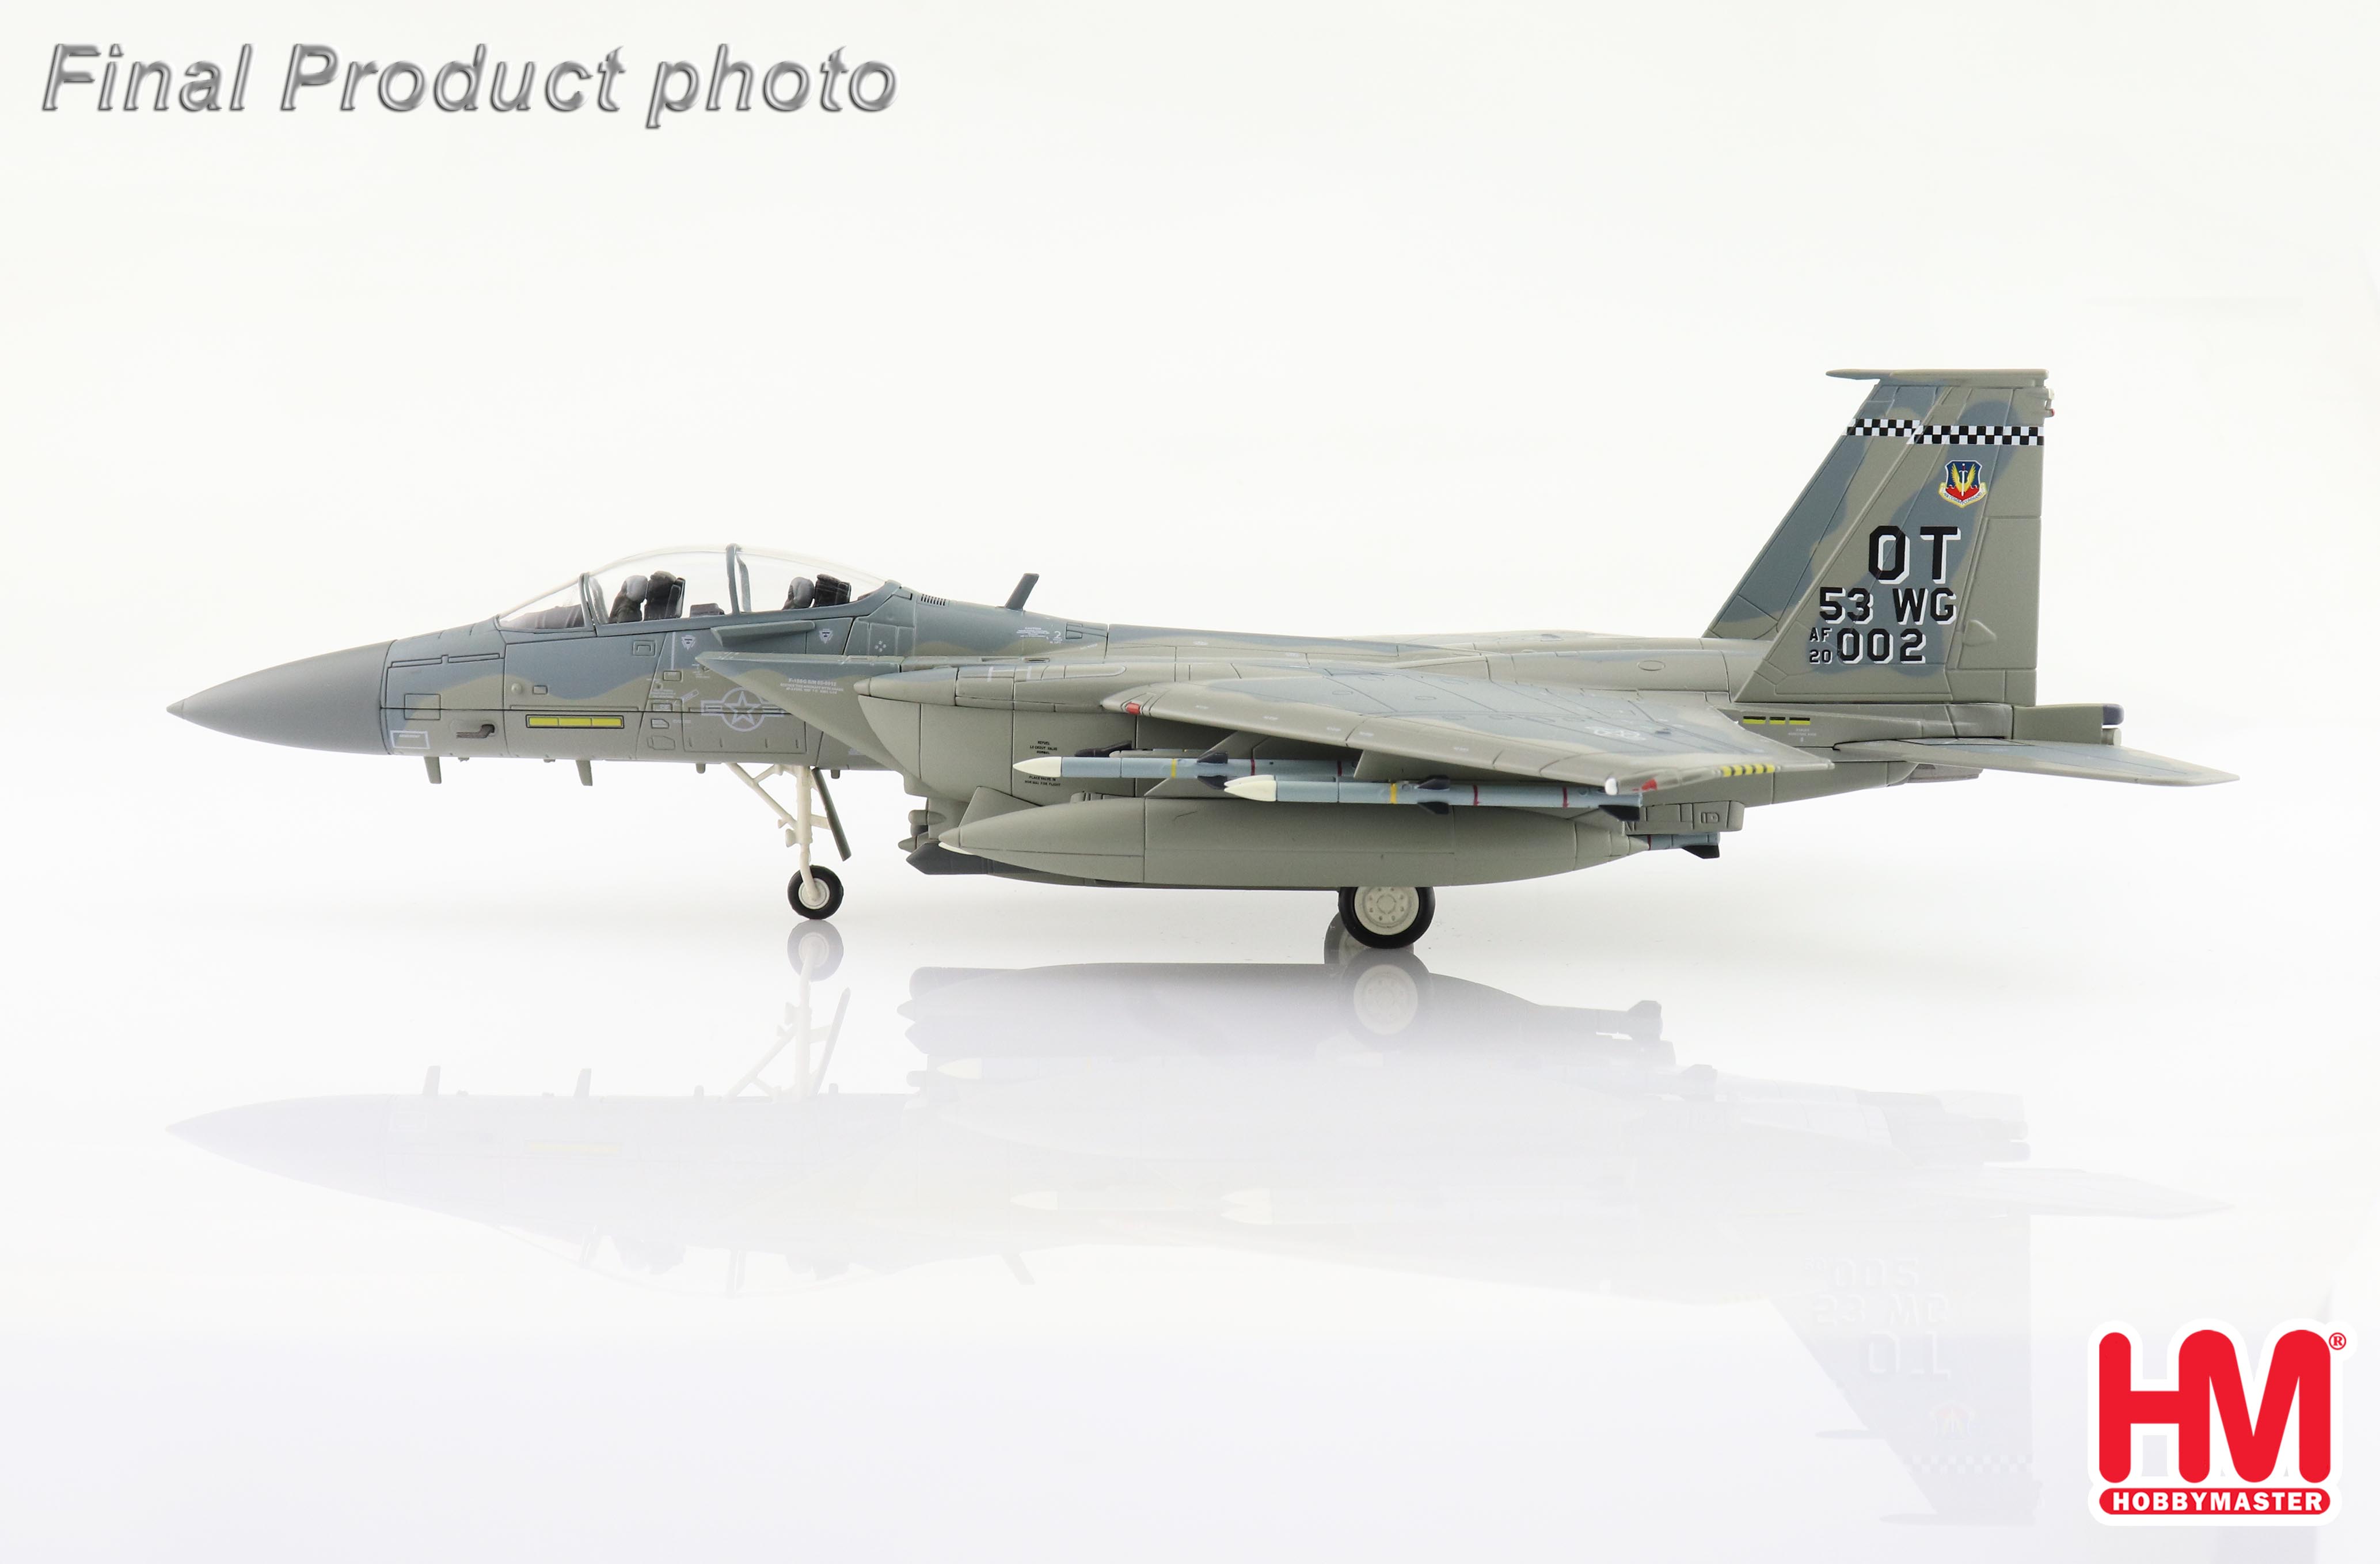 F-15EX Eagle II 20-0002, 53 WG, USAF, 2002 (with 8 x AIM-120)